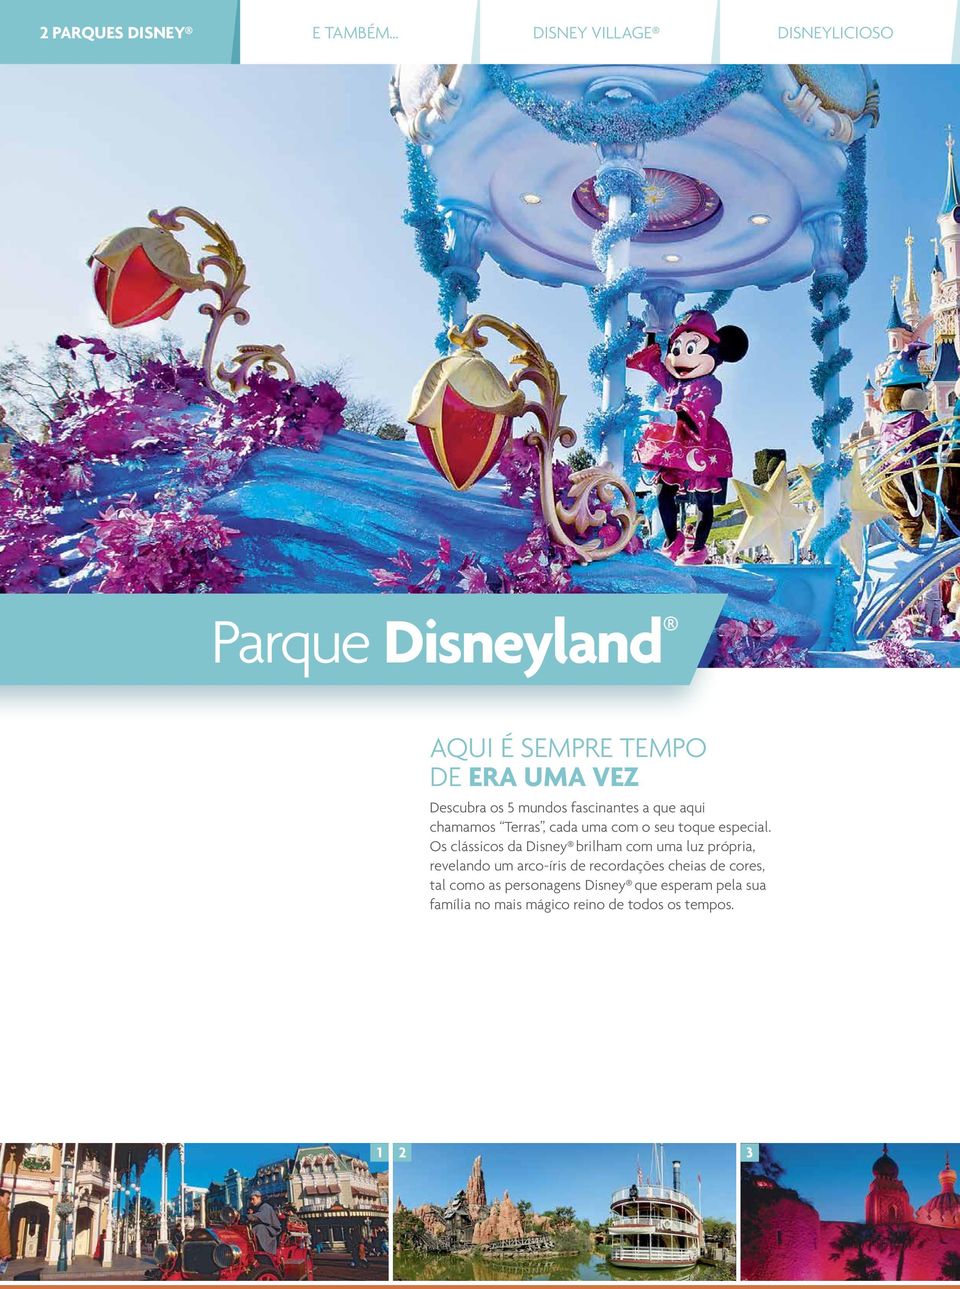 Os clássicos da Disney brilham com uma luz própria, revelando um arco-íris de recordações cheias de